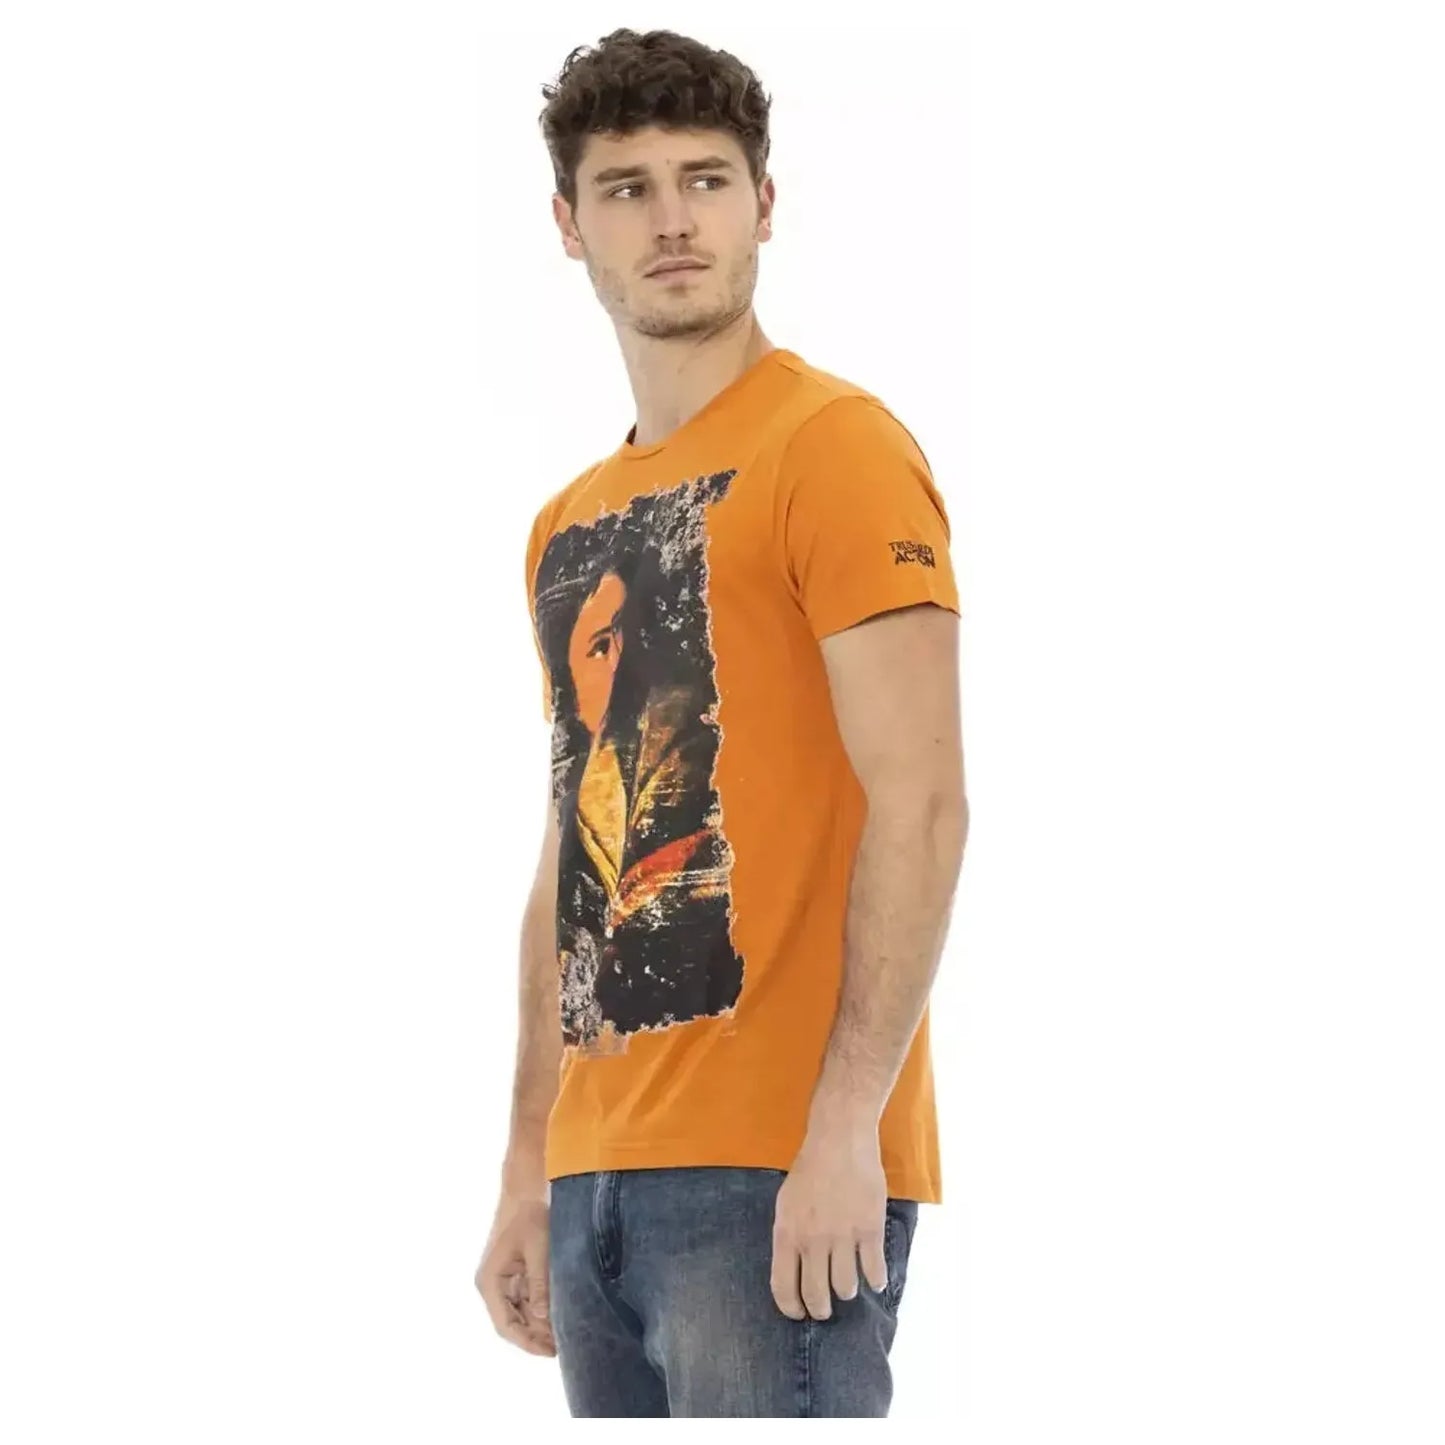 Trussardi Action Chic Orange Short Sleeve Round Neck Tee orange-cotton-t-shirt-26 product-22743-62715972-25-59b8e96e-219.webp